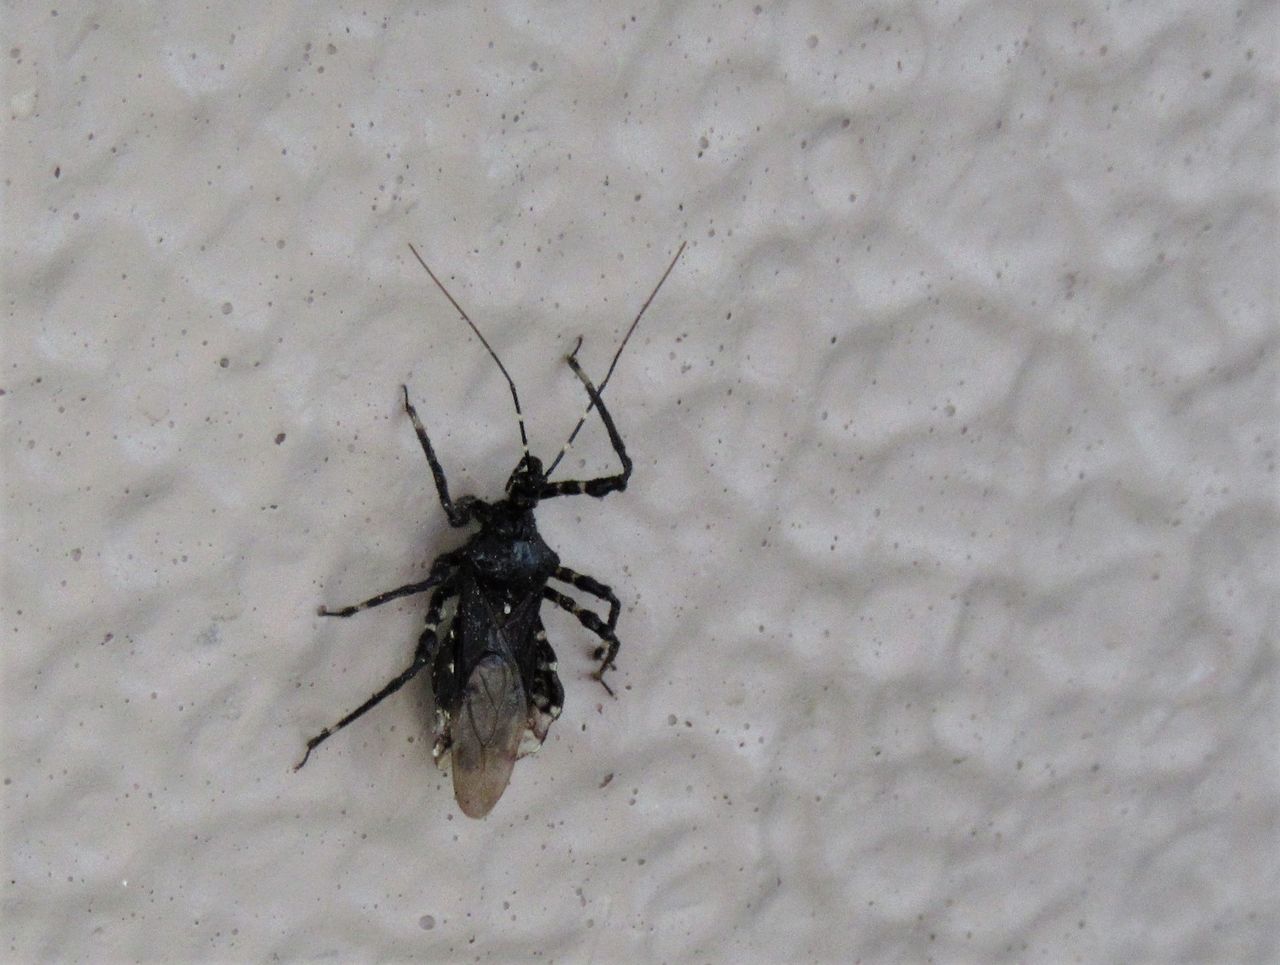 昆虫フォト ベランダに来た黒い虫 カメムシの一種か バイブレント昆虫写真 New